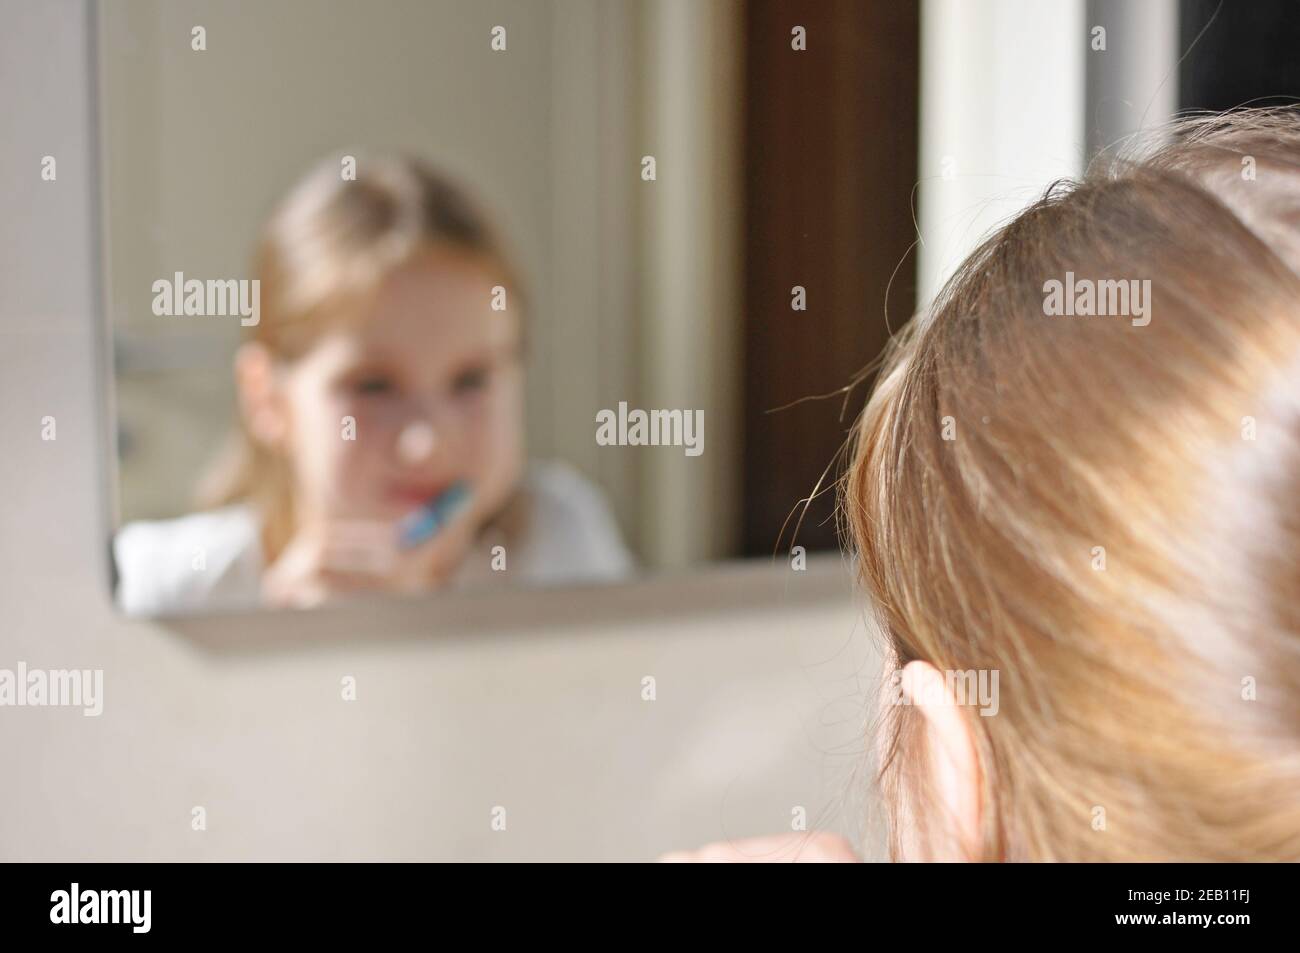 Enfant européen blanc (enfant), fille se lavant les dents avec une brosse à dents dans la salle de bains. Vue symétrique. Concept de soins dentaires. Banque D'Images